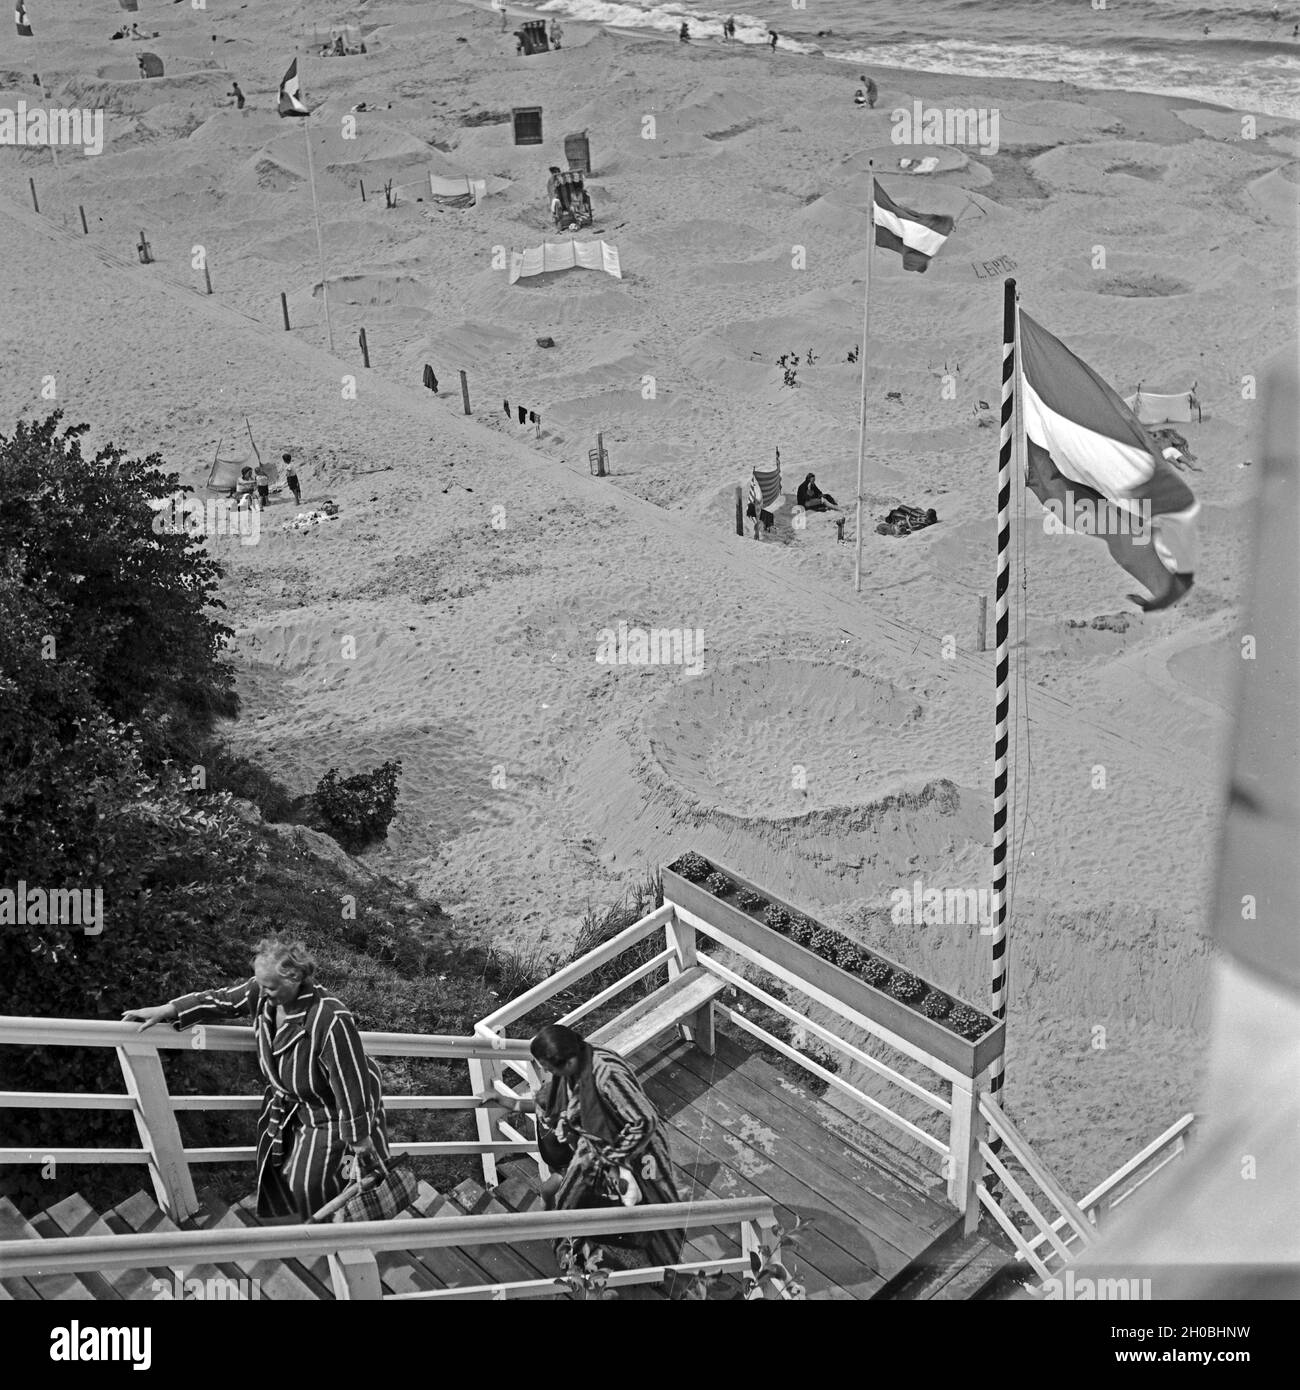 Am Strand des renommierten Ostseebads Rauschen im Samland in Ostpreußen, Deutschland 1930er Jahre. At the beach of the Baltic Sea bath Rauschen in Sambia region in East Prussia, Germany 1930s. Stock Photo